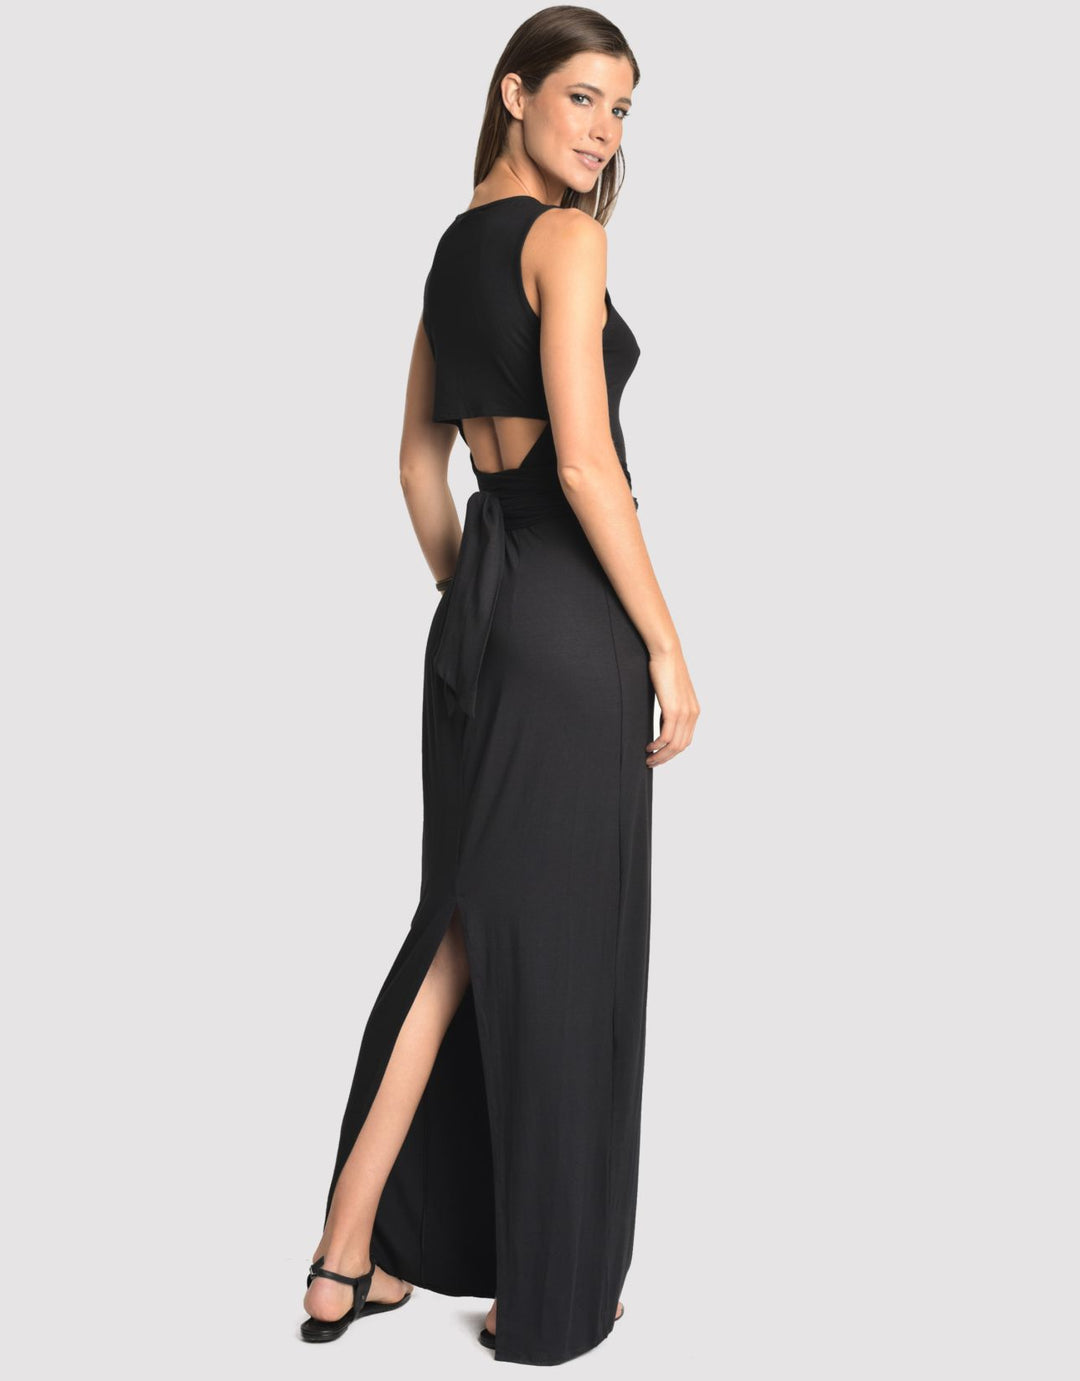 Lenny Niemeyer Black Sleeveless Maxi Dress 